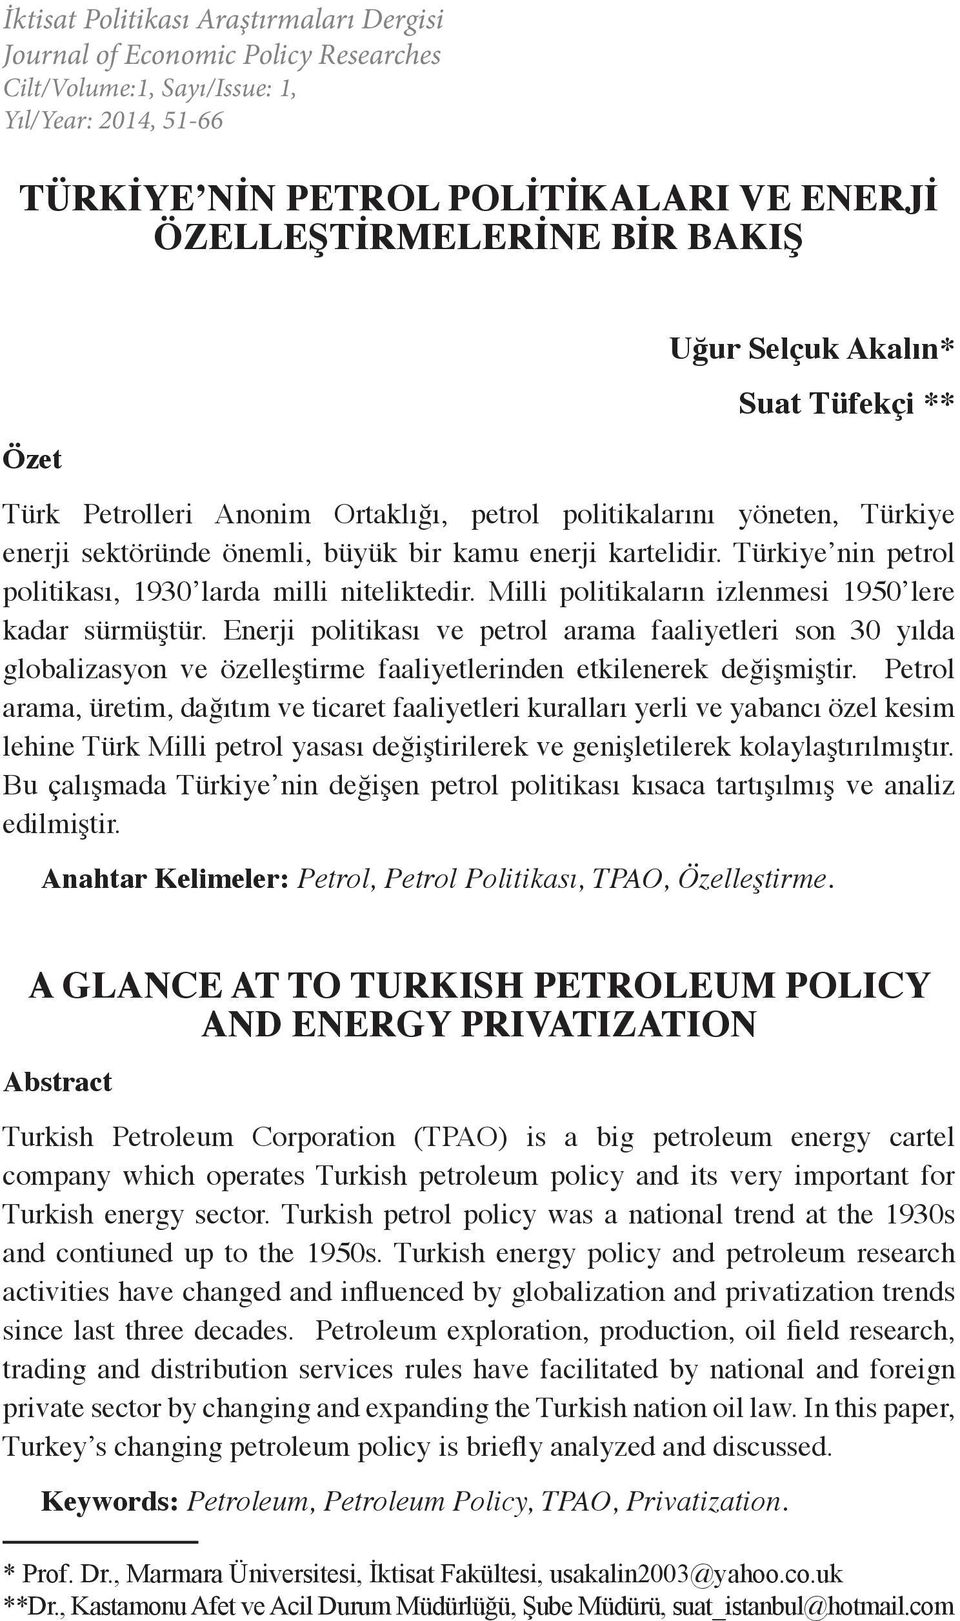 Türkiye nin petrol politikası, 1930 larda milli niteliktedir. Milli politikaların izlenmesi 1950 lere kadar sürmüştür.